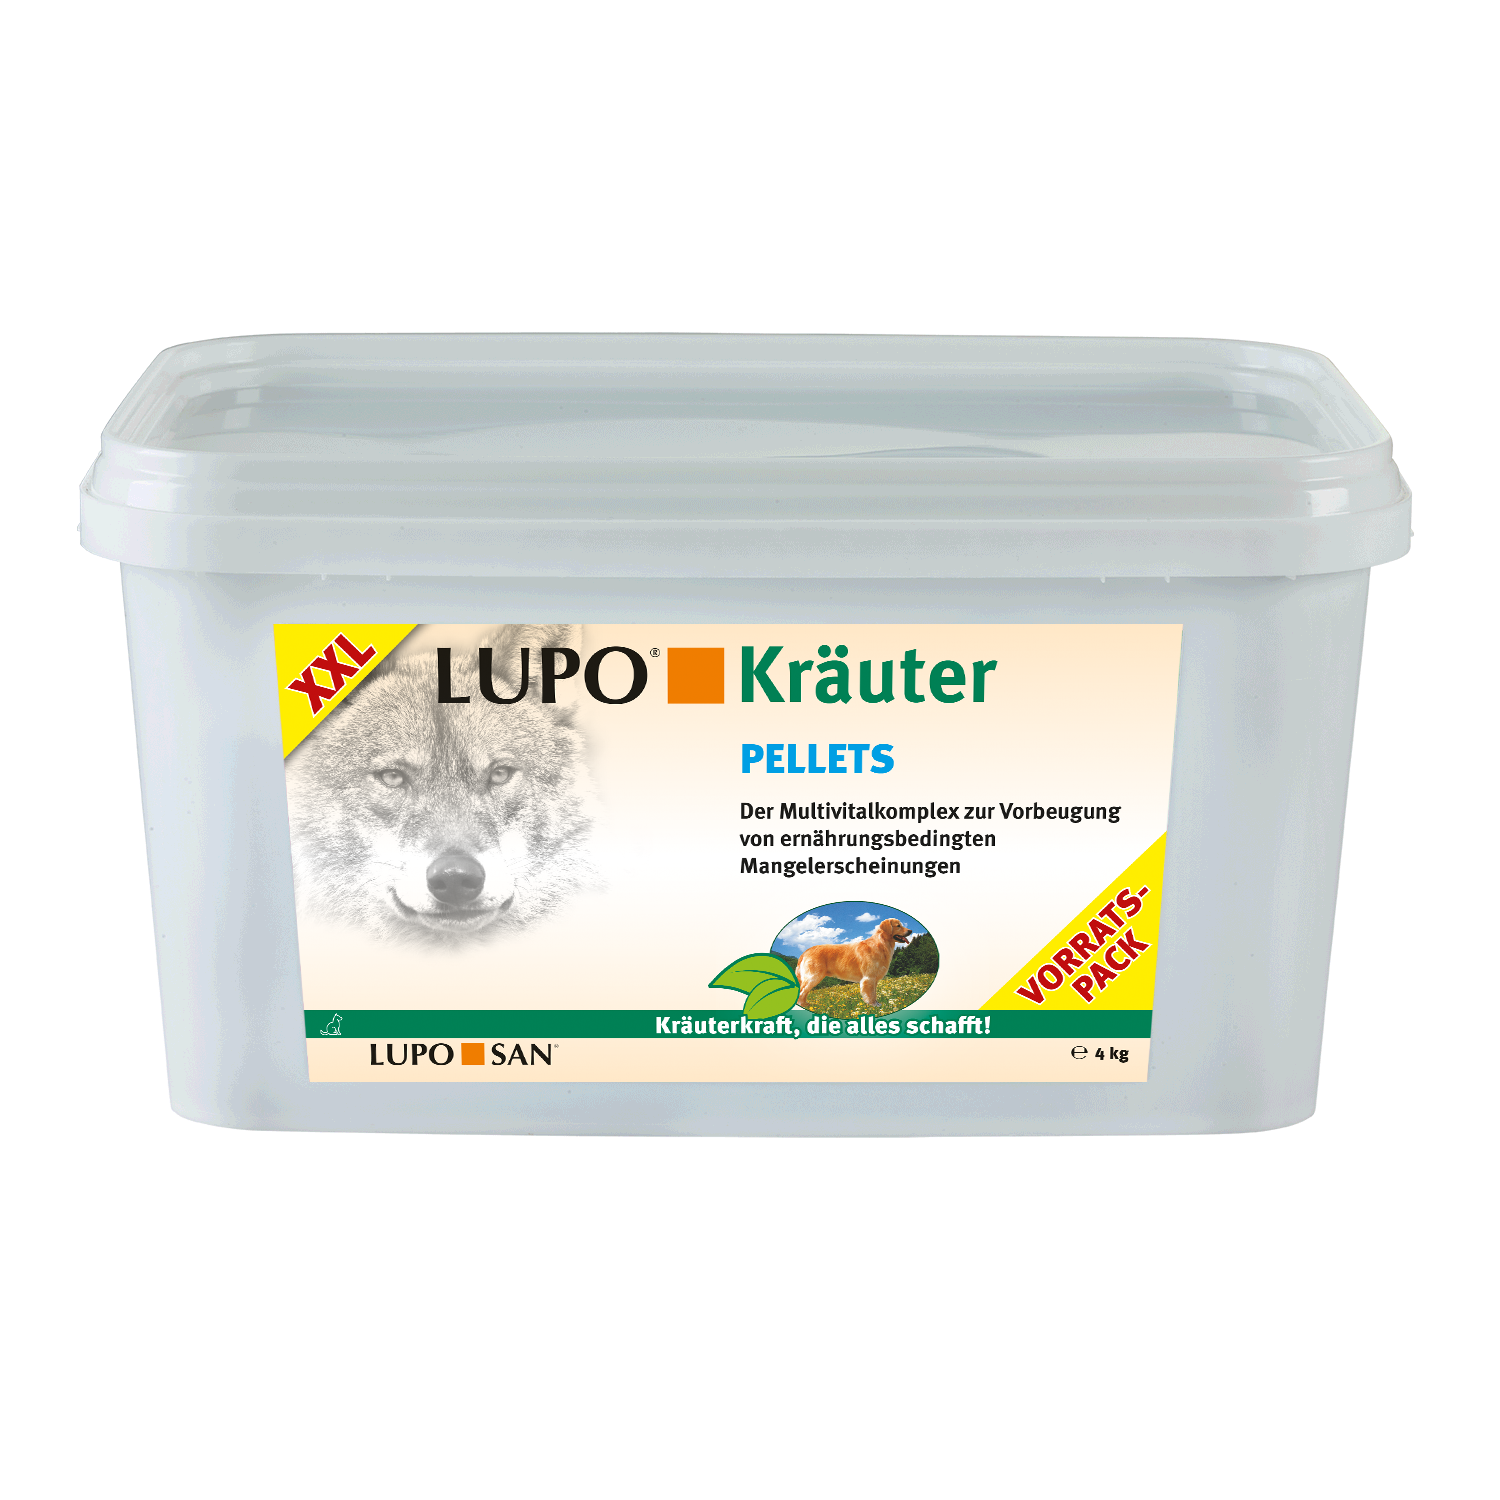 LUPO Kräuter Pellets 4000 g